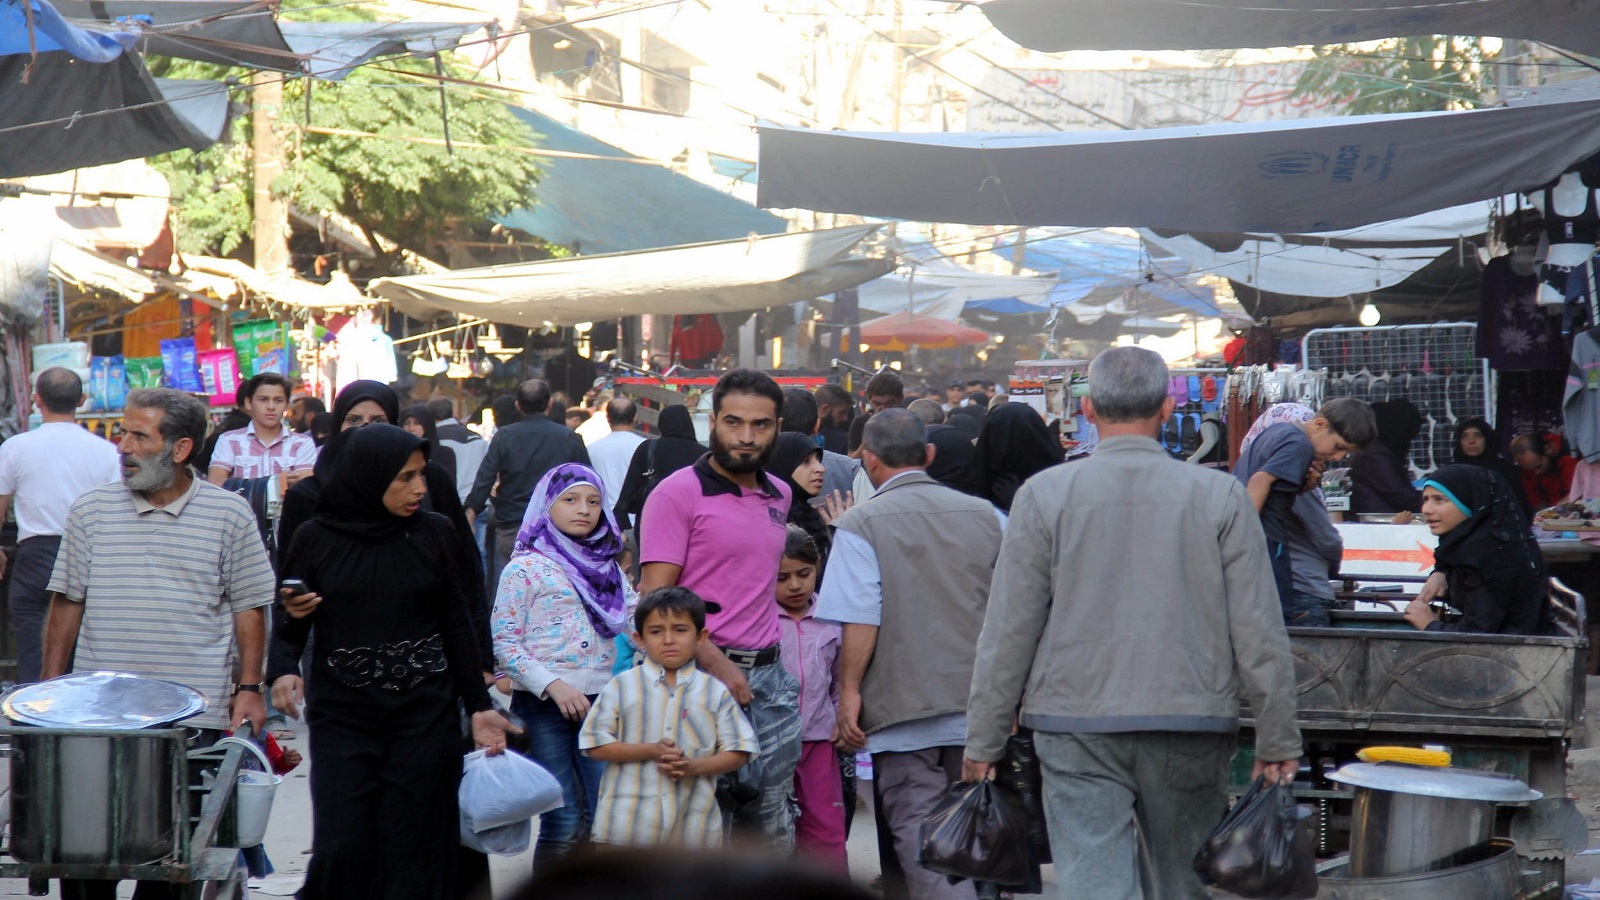 البازارات تنتشر في دمشق: منافسة المتاجر برأسمال صغير